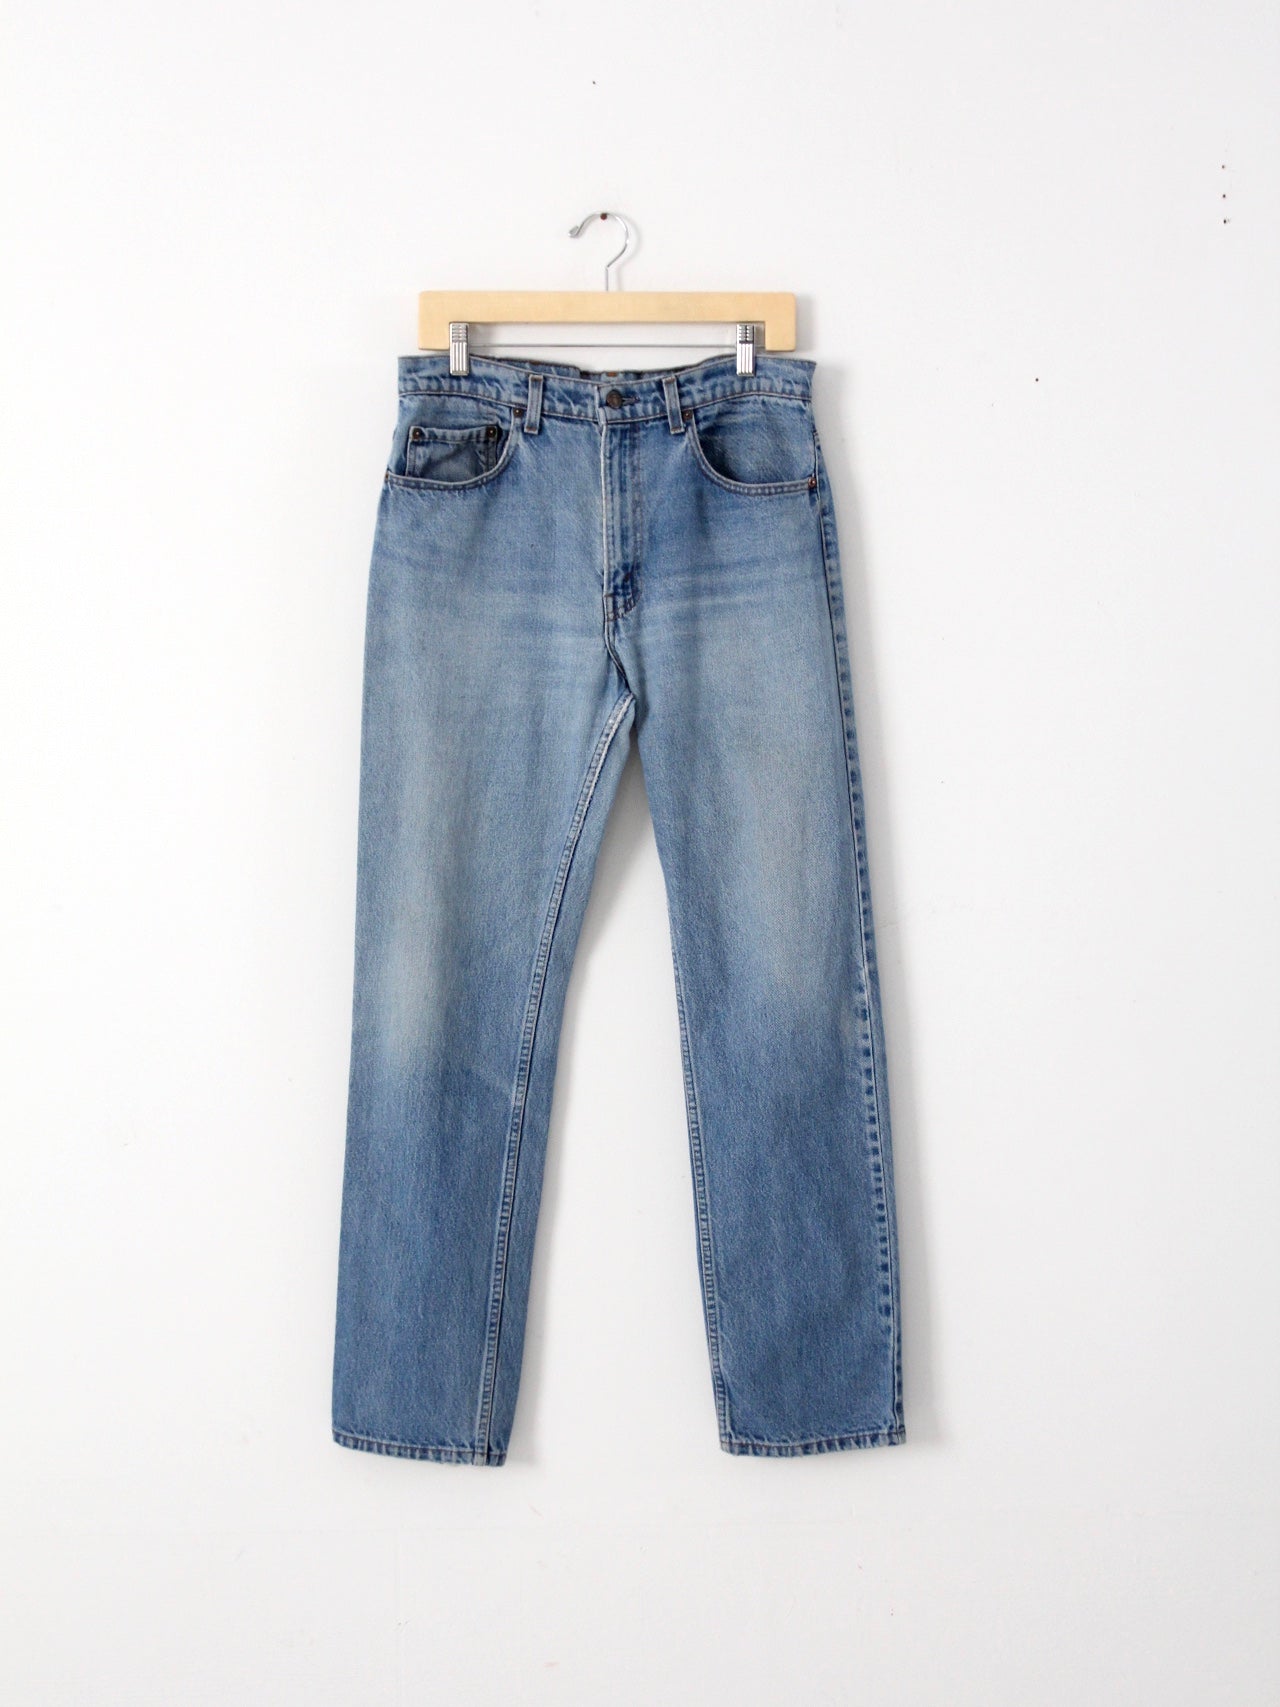 vintage Levis 505 jeans, 34 x 32 – 86 Vintage